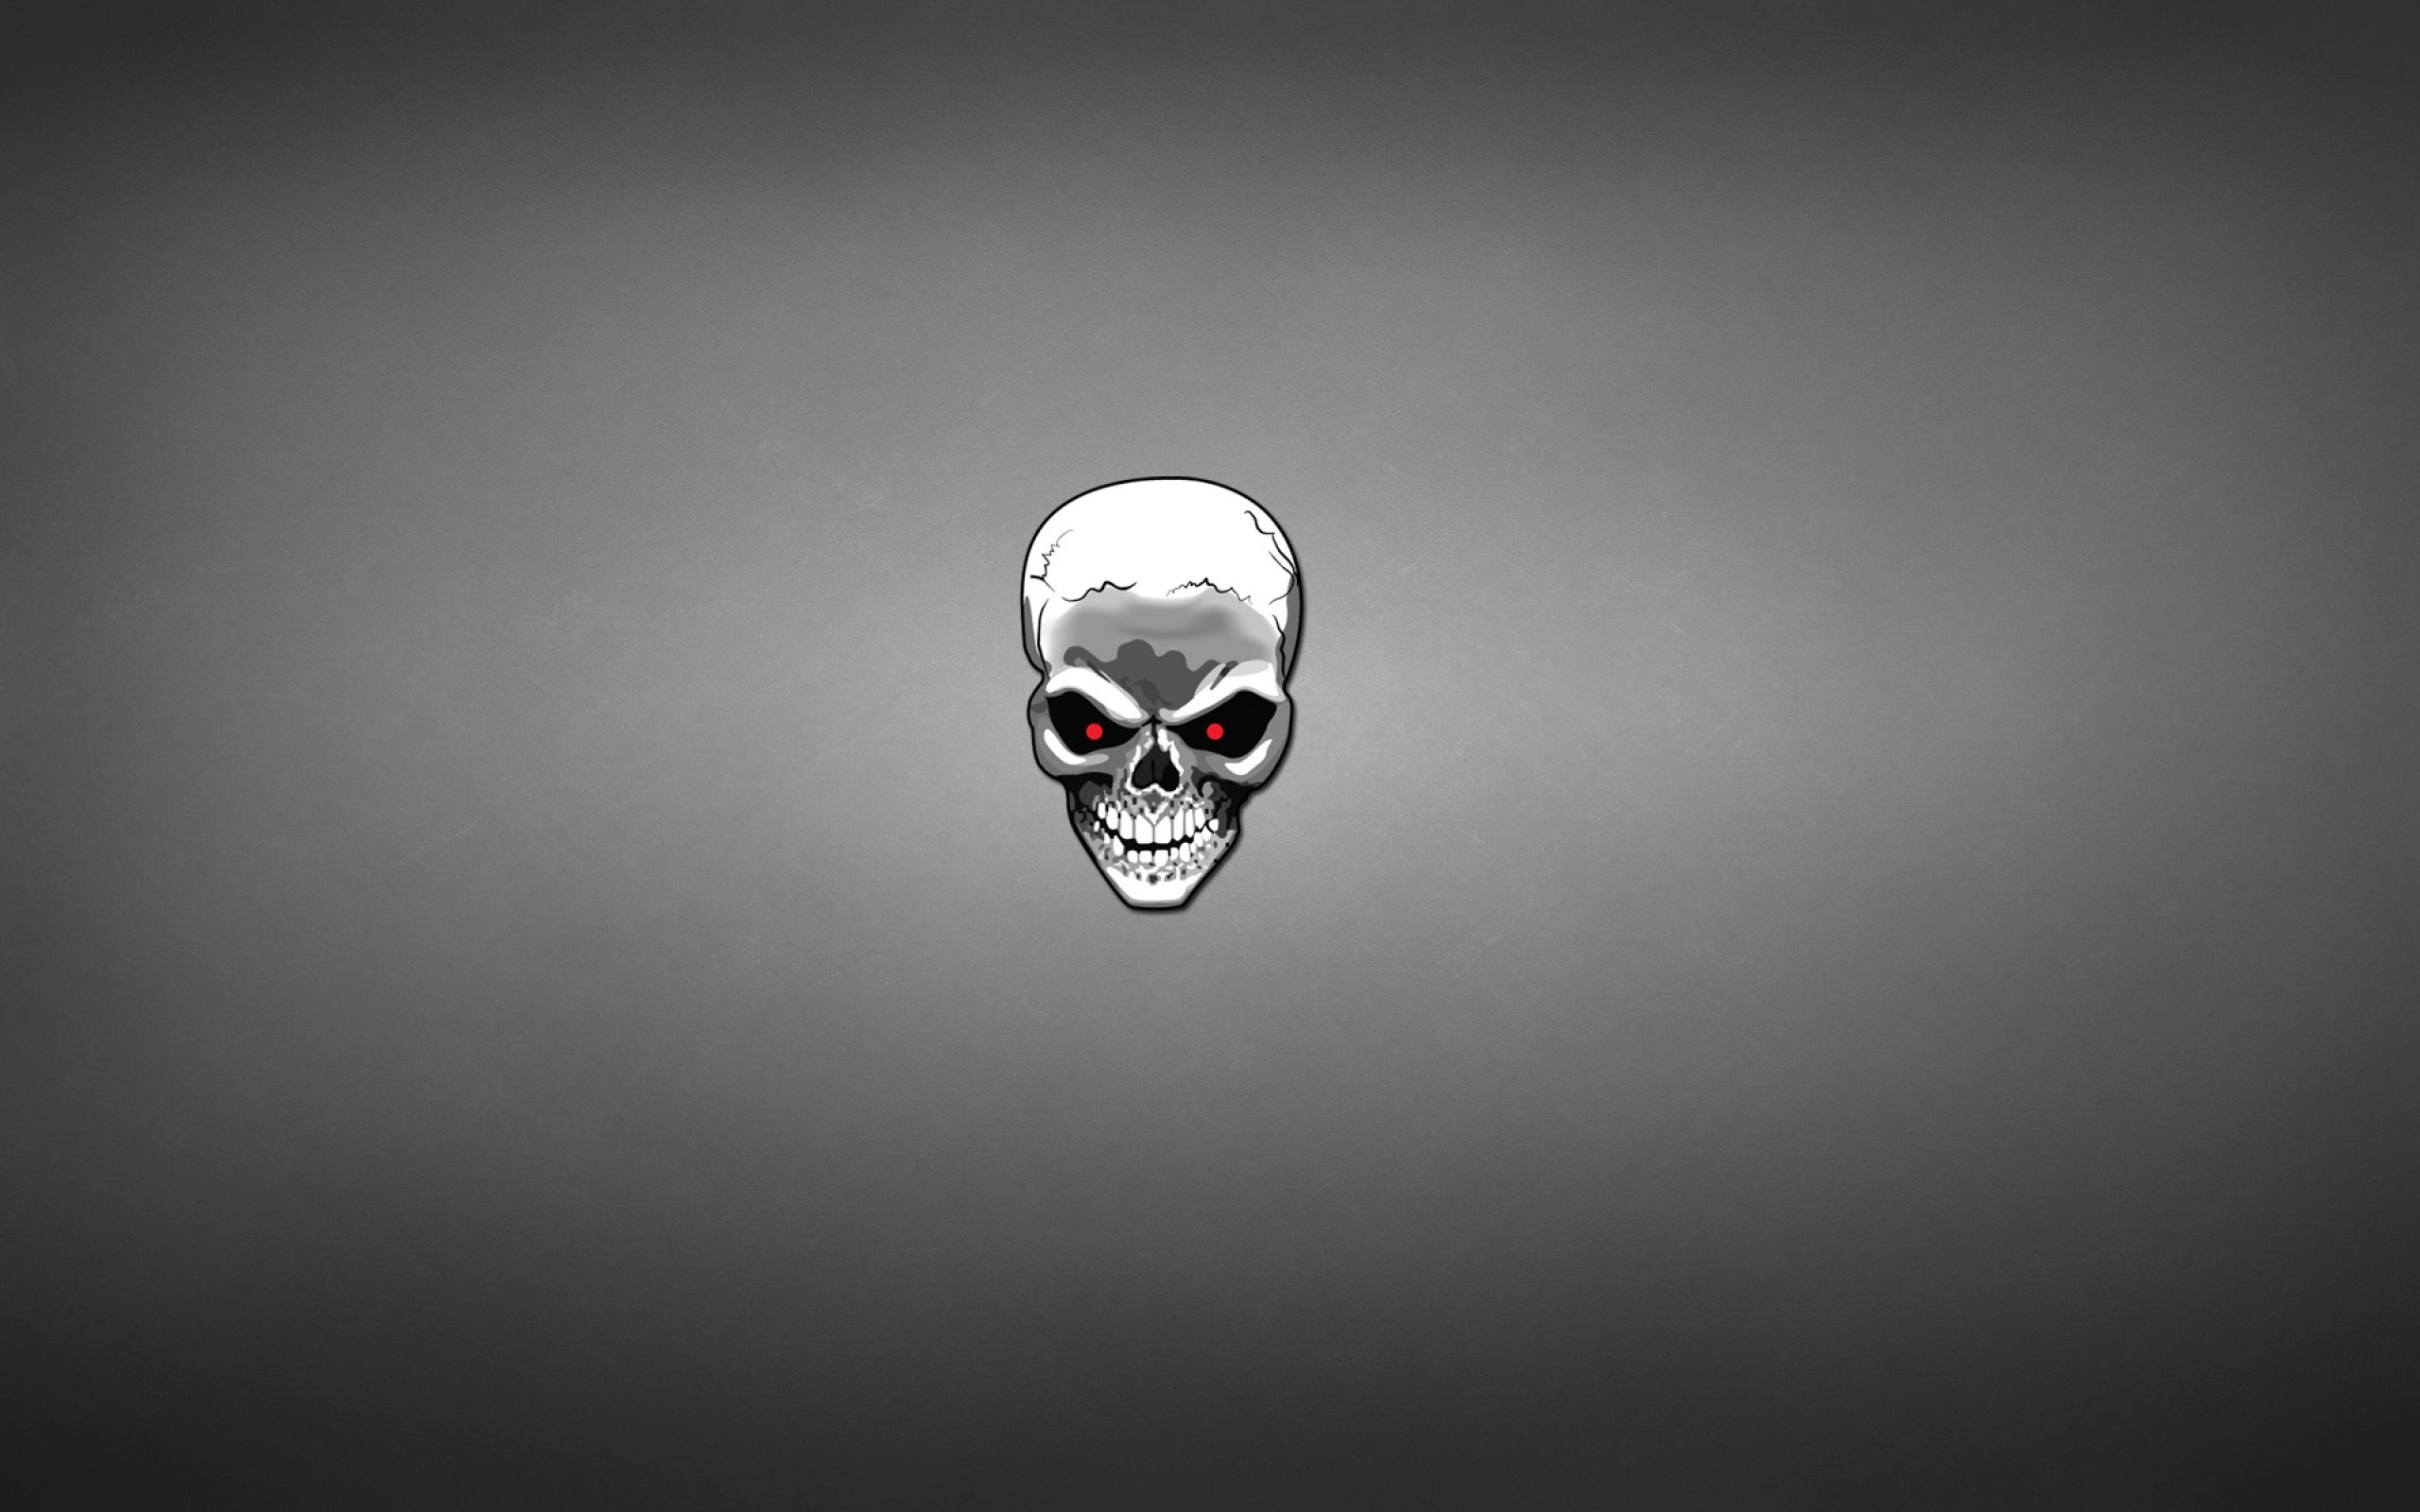 Skull Head HD Wallpaper For Desktop Amp Mobile